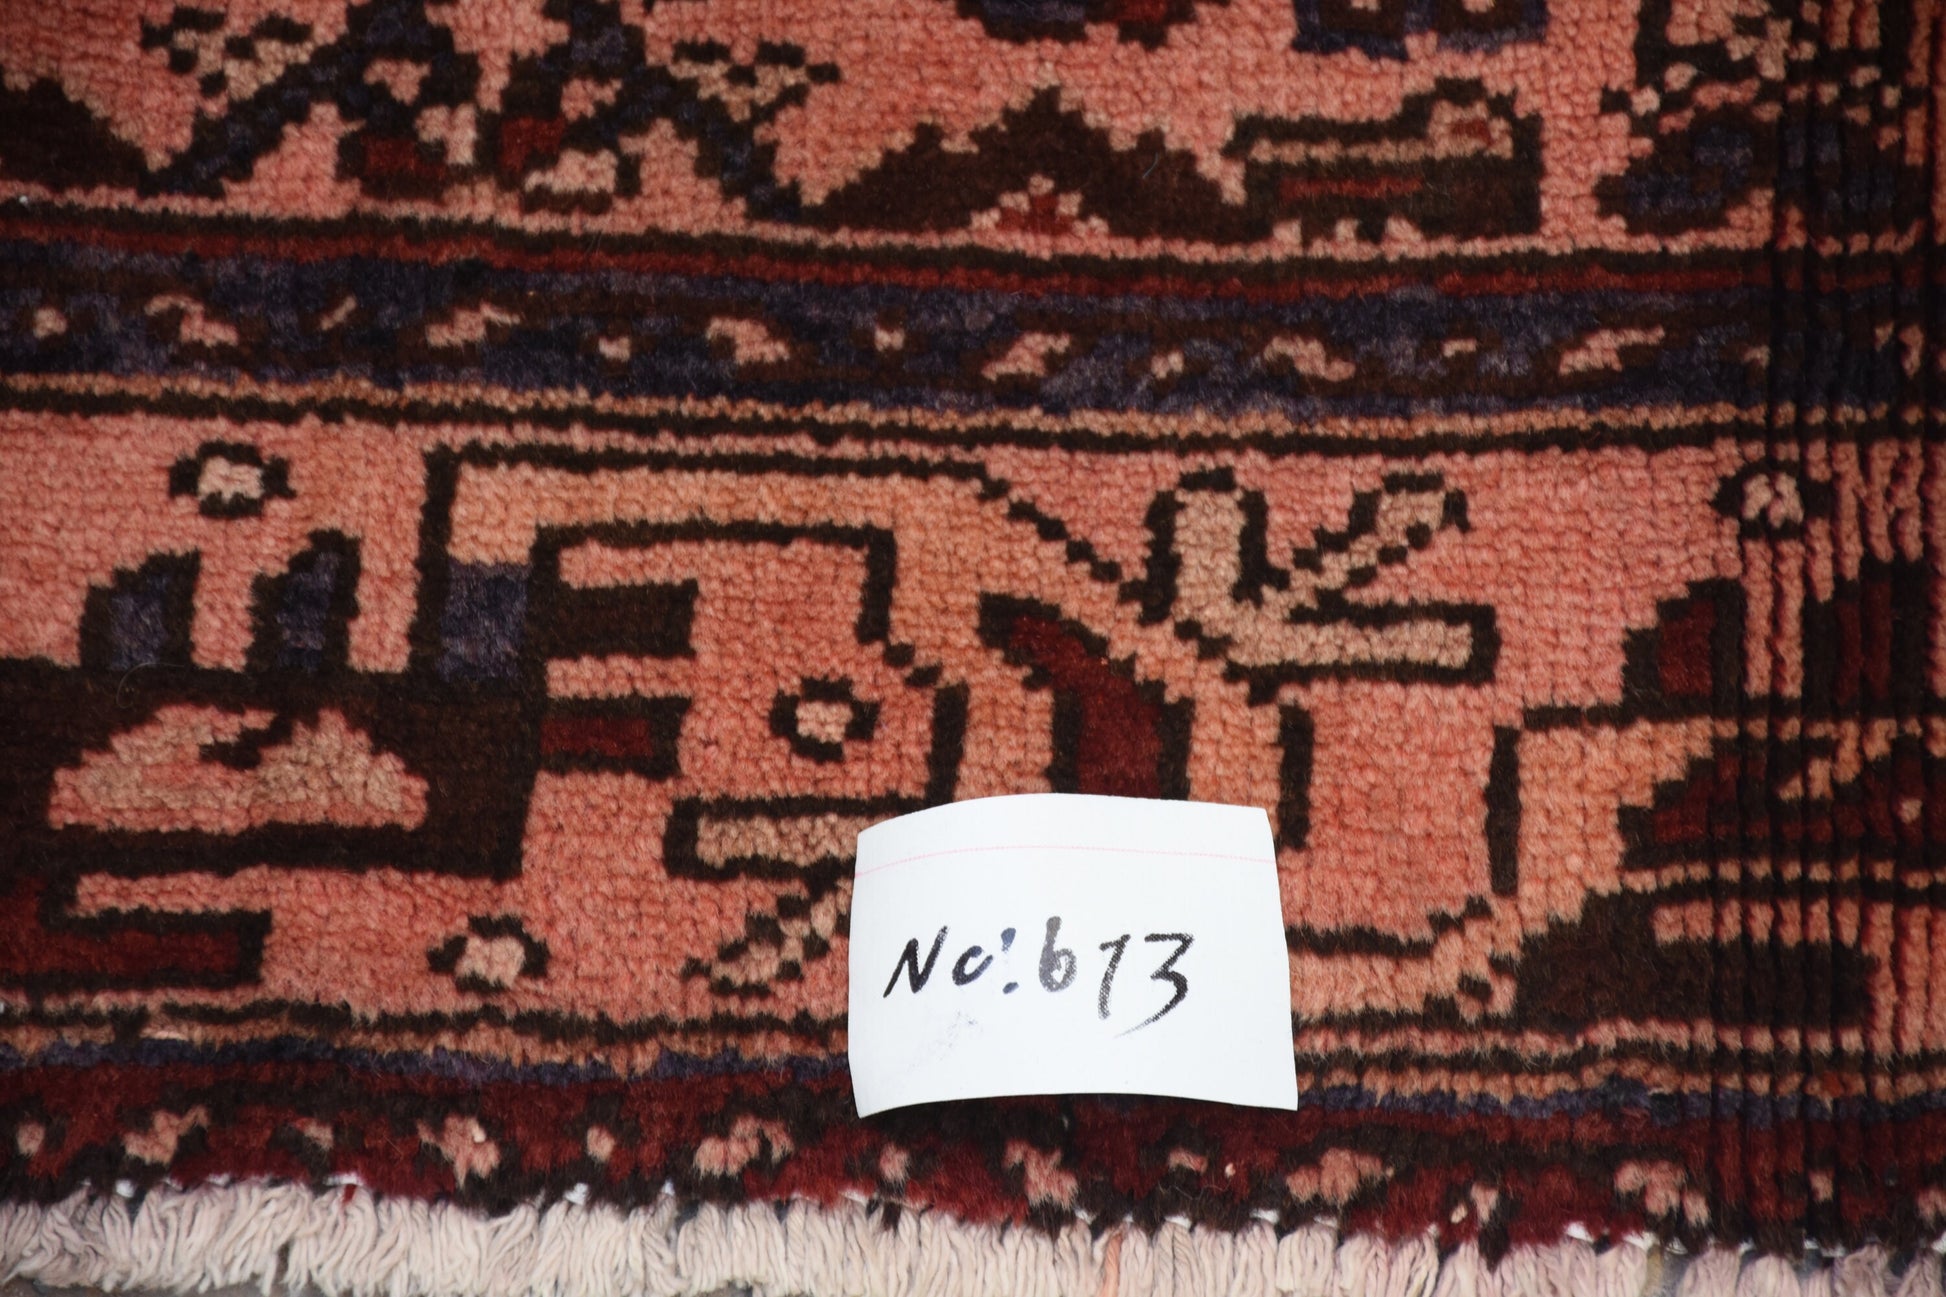 Red 5x7 Vintage Rug | Tribal Oriental Persian Rug | Kazak Bohemian Rug | Handmade Rug